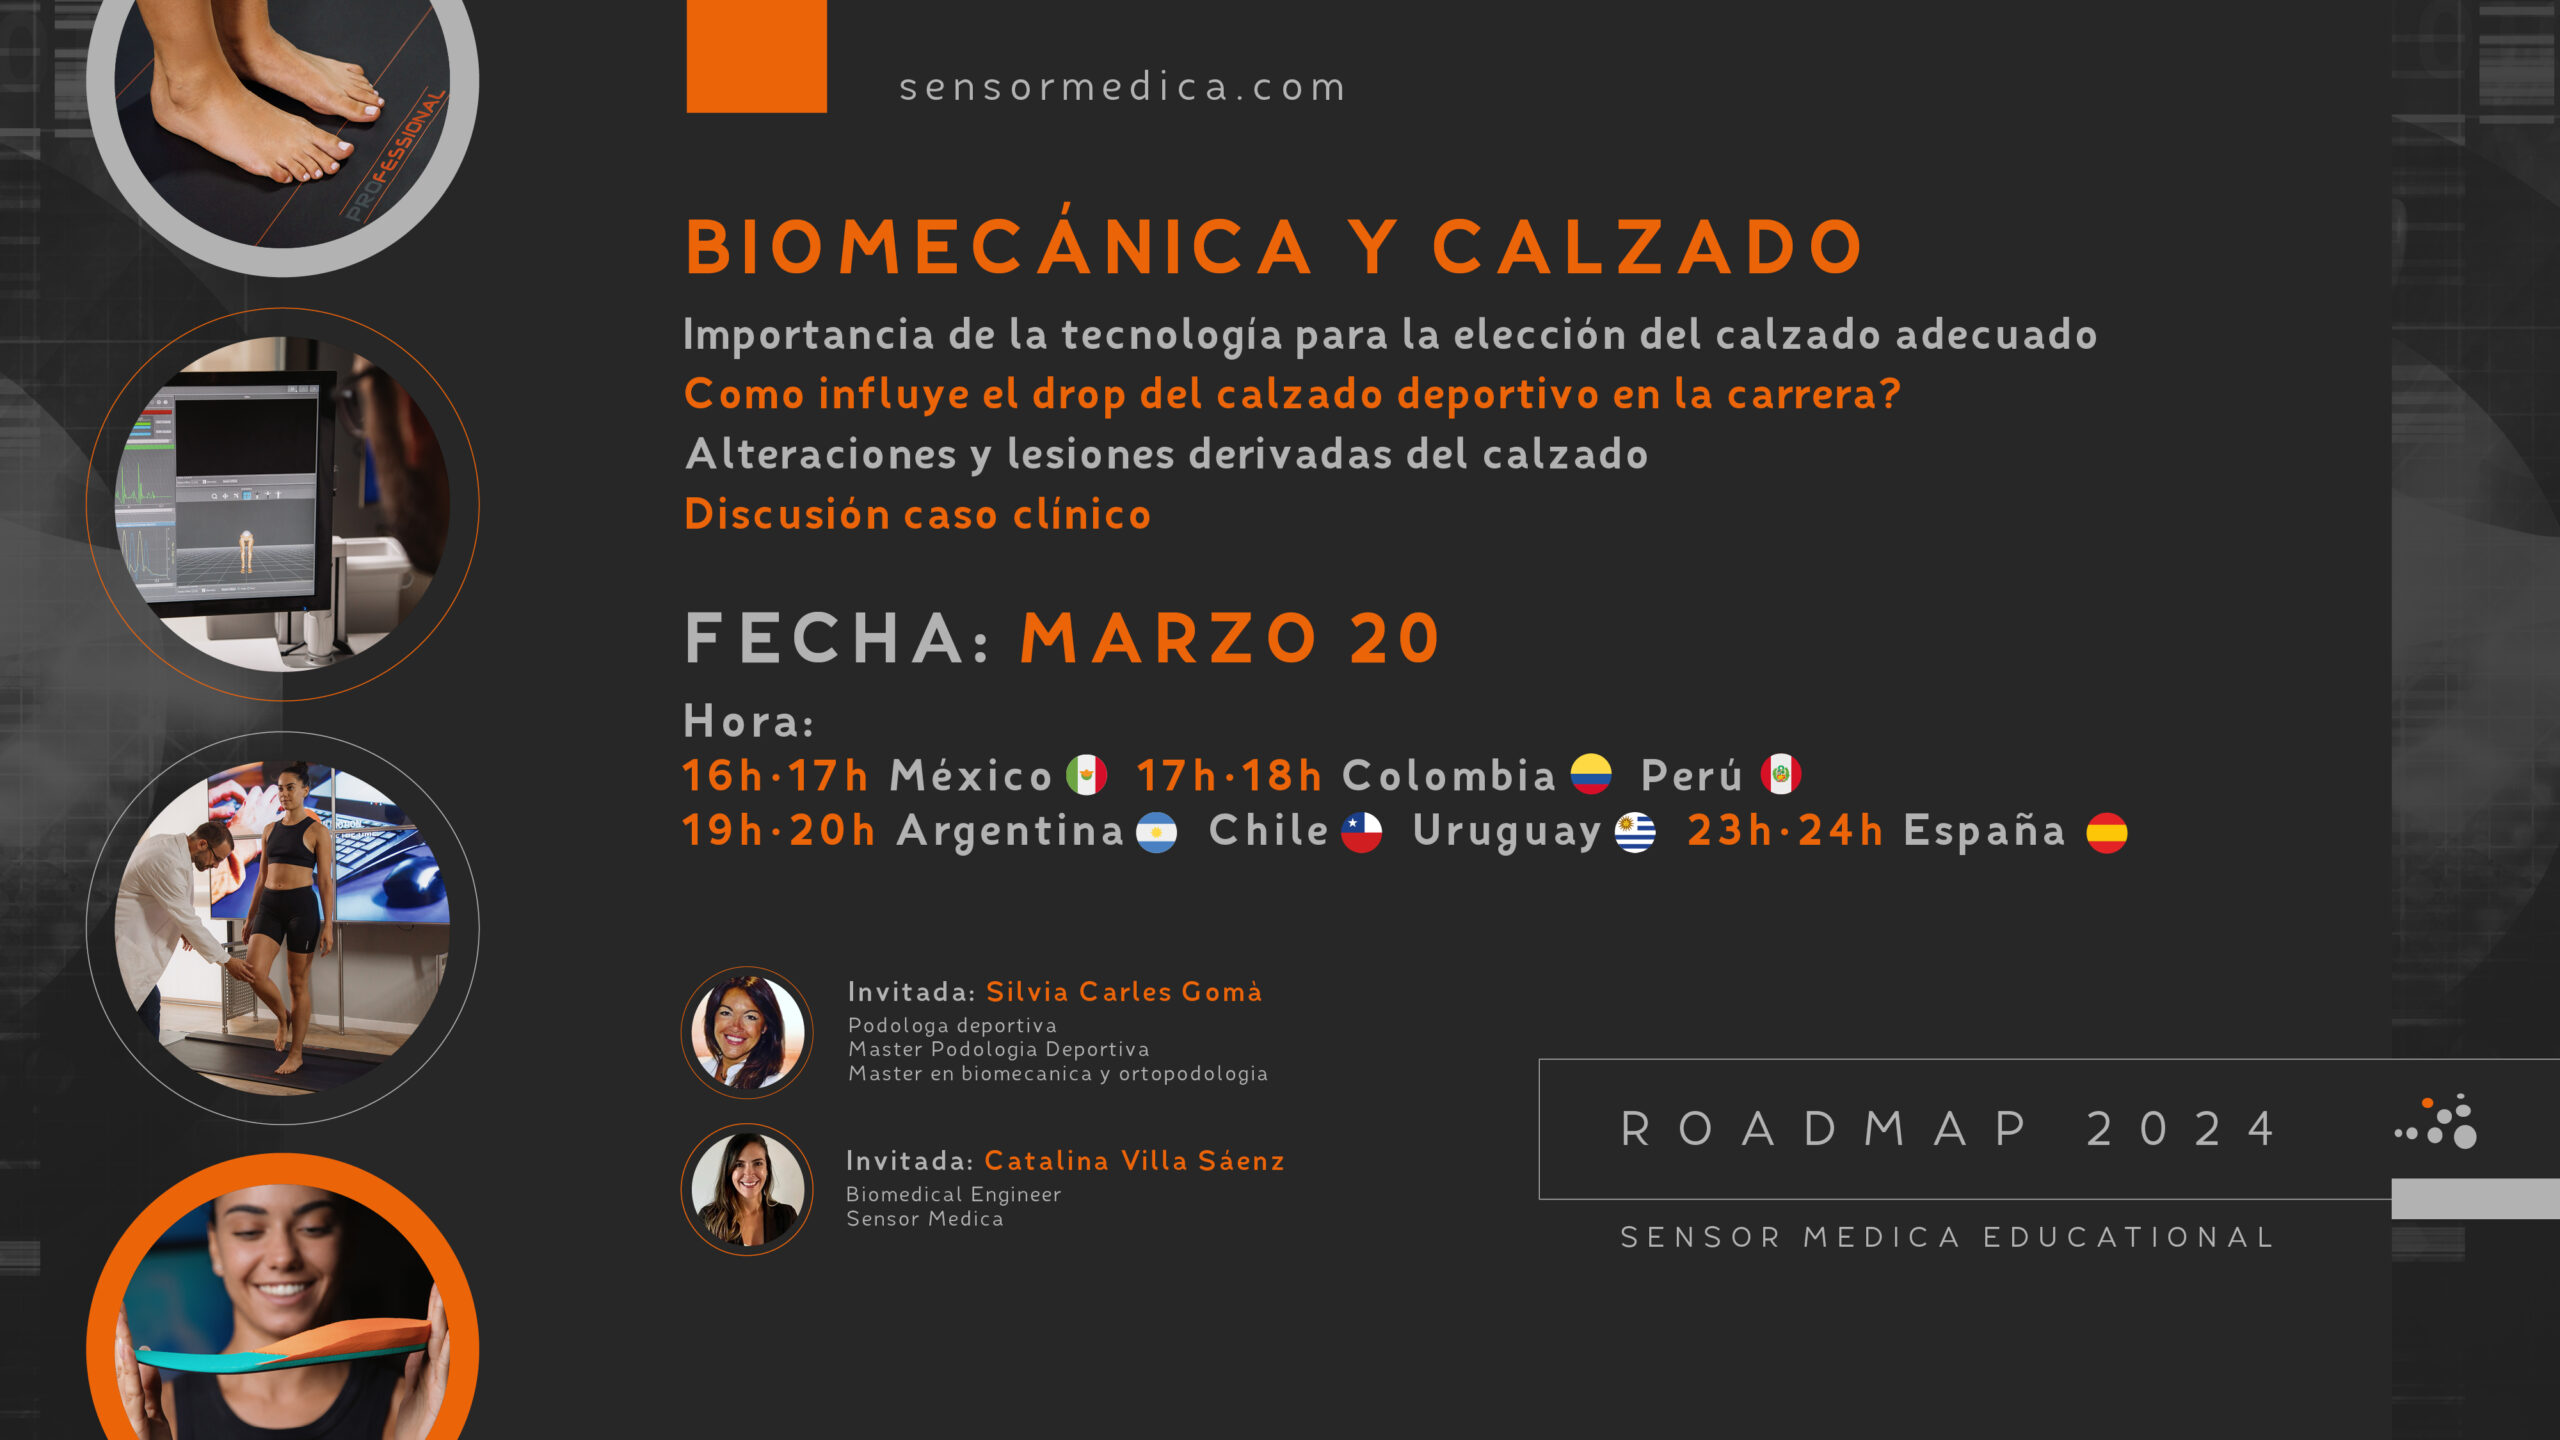 RoadMap 2024: Biomecánica y Calzado